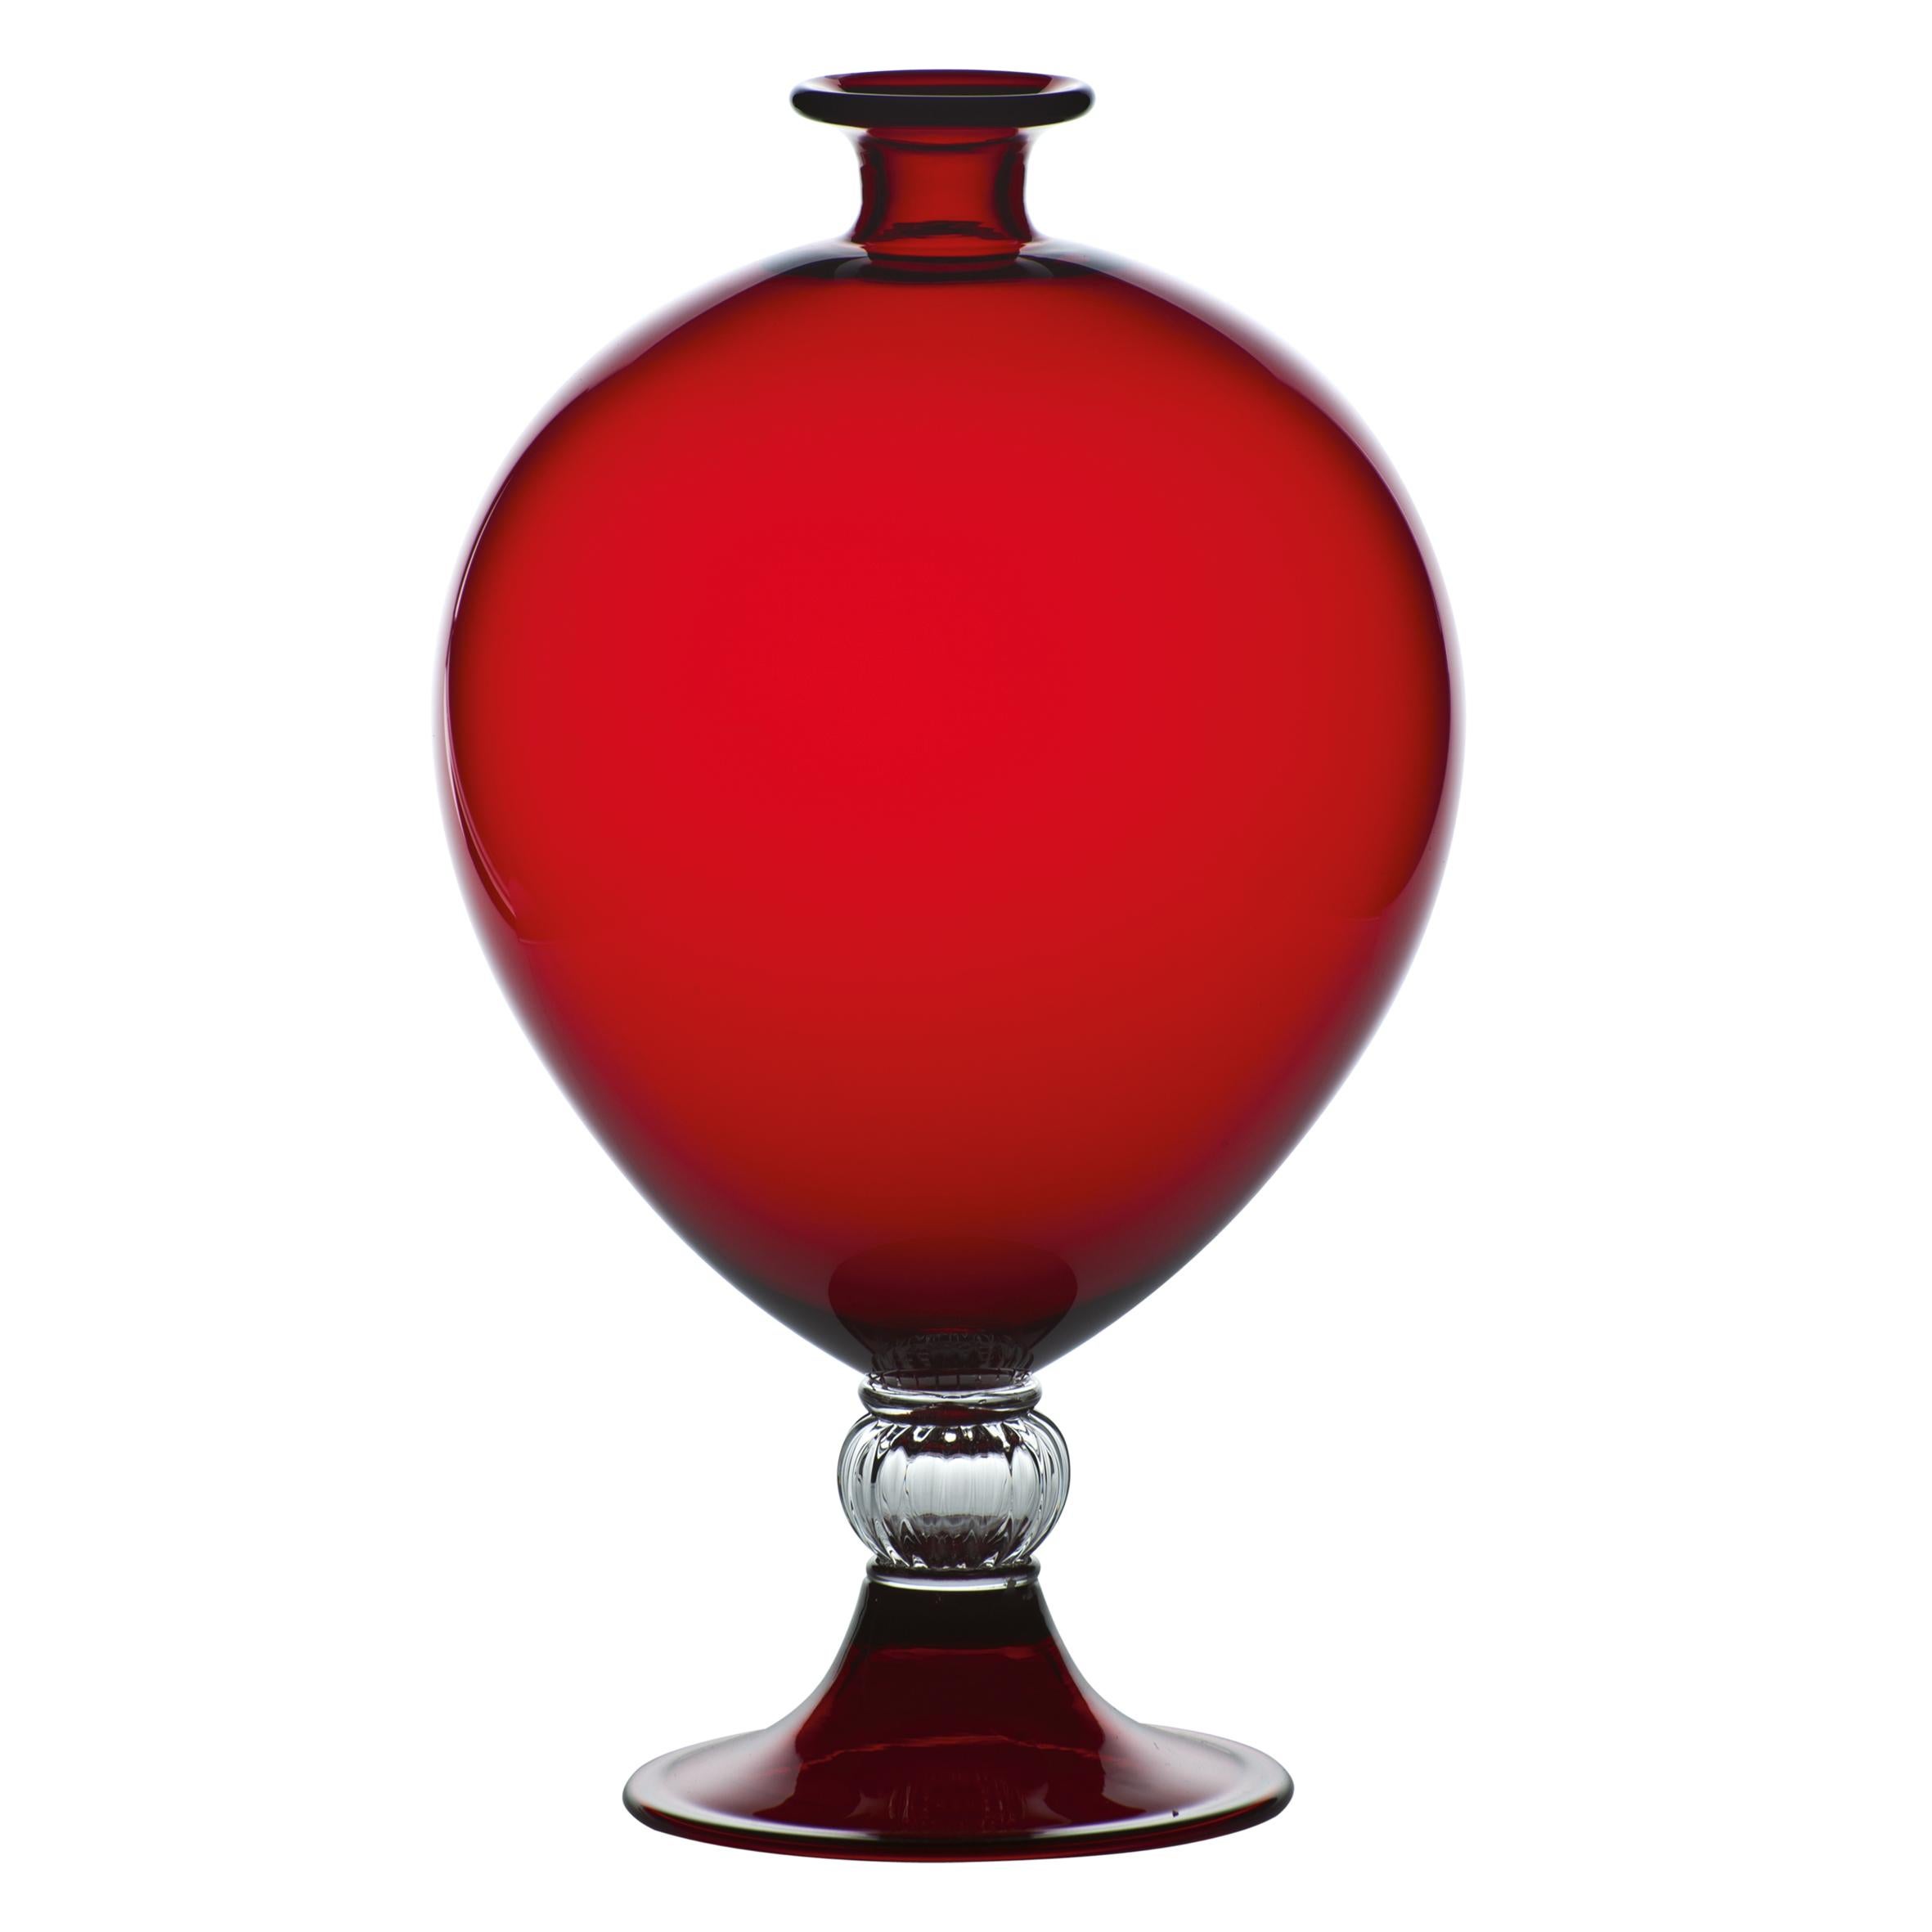 Vase en verre Venini avec corps cylindrique et base décorative en cristal. Présenté en classe de couleur rouge avec cristal conçu en 1921. Parfait pour la décoration intérieure en tant que conteneur ou pièce forte pour n'importe quelle